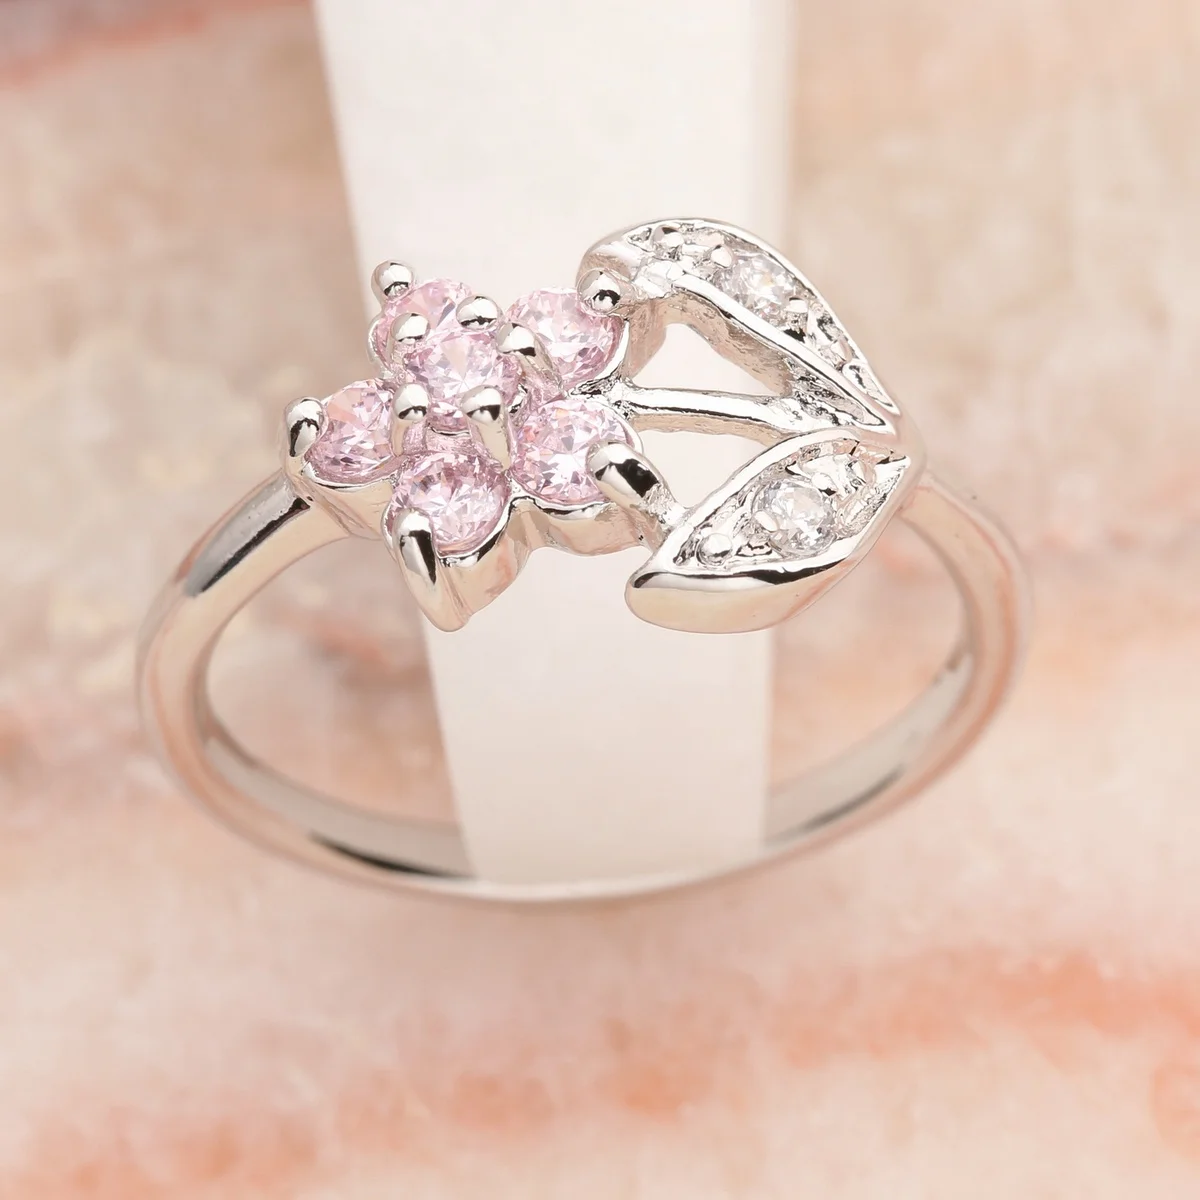 

Цветок розовый кунцит 3*3 мм полудрагоценный камень серебро крутое для женщин кольцо Q2222